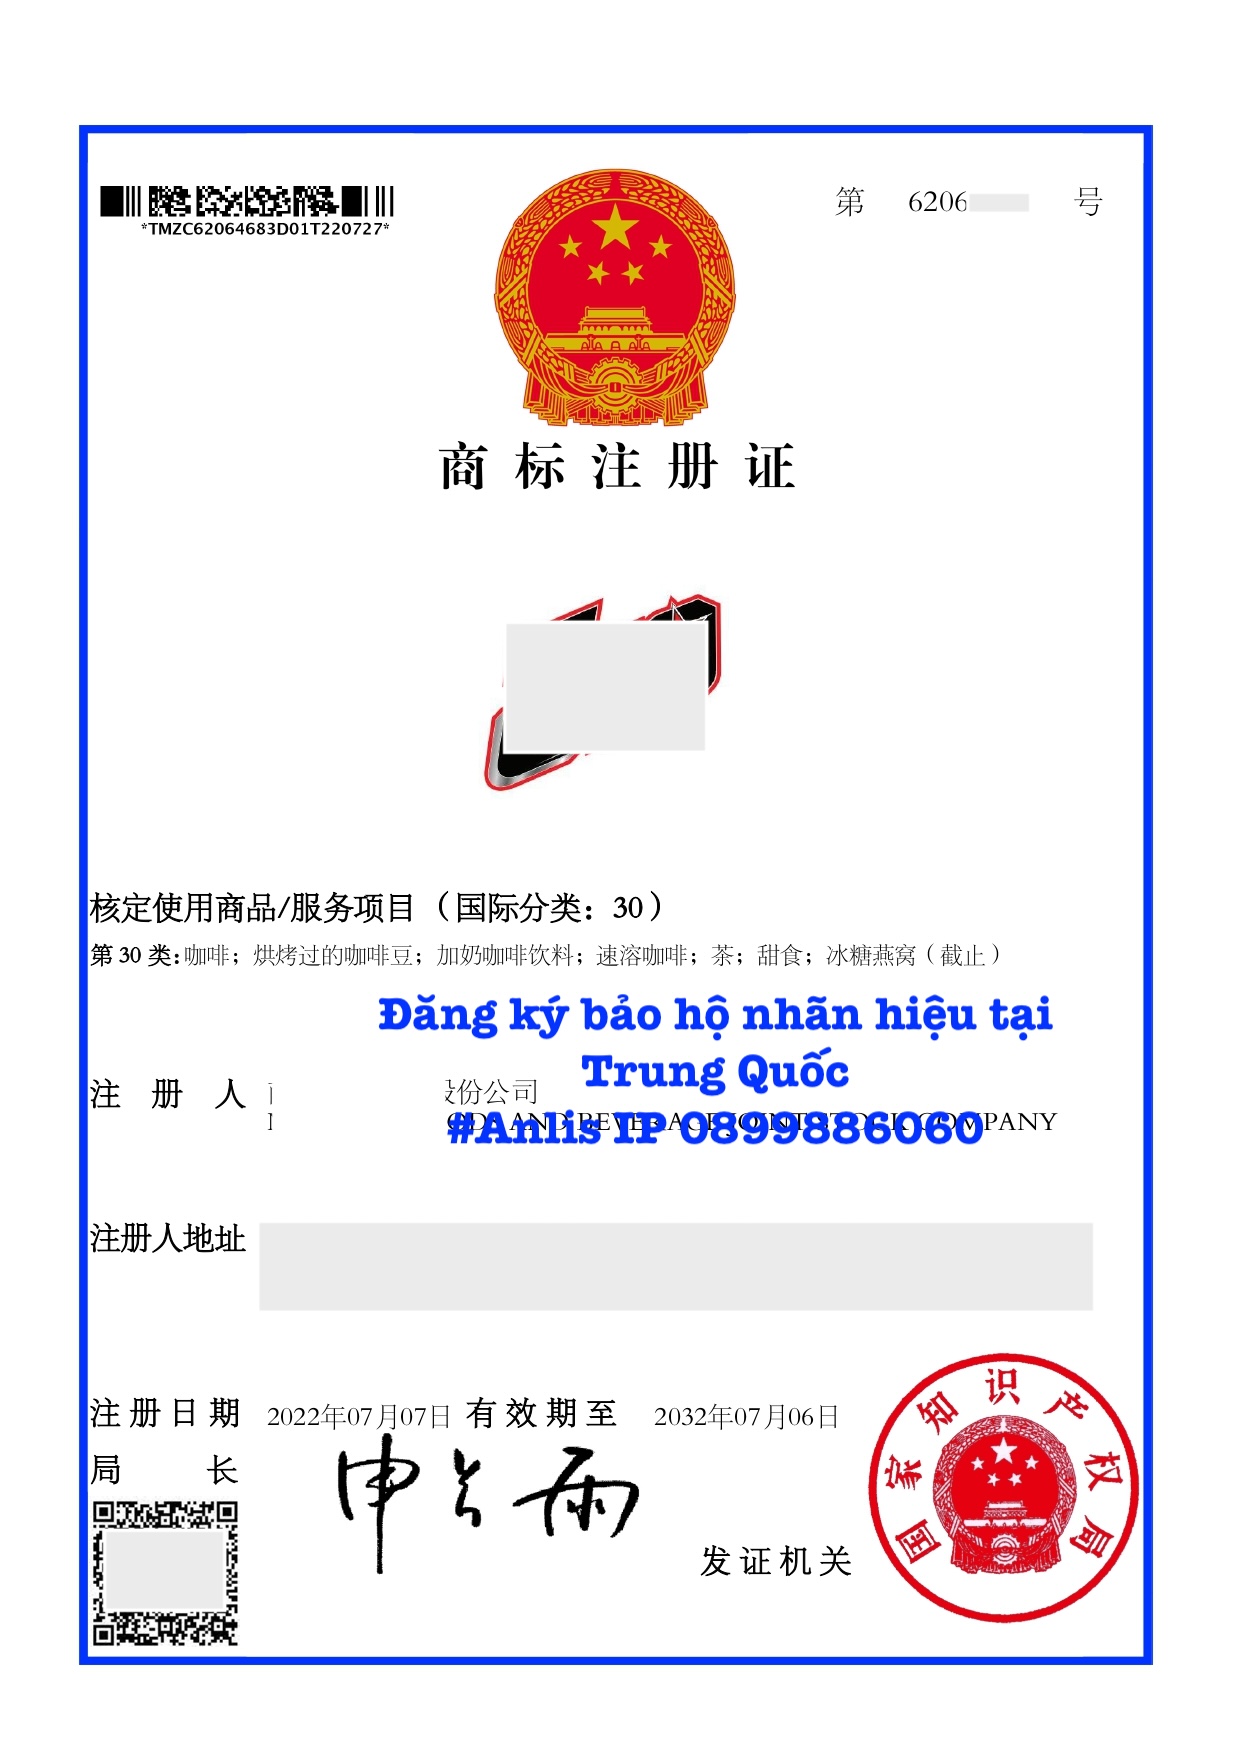 Đăng ký bảo hộ nhãn hiệu tại Trung Quốc